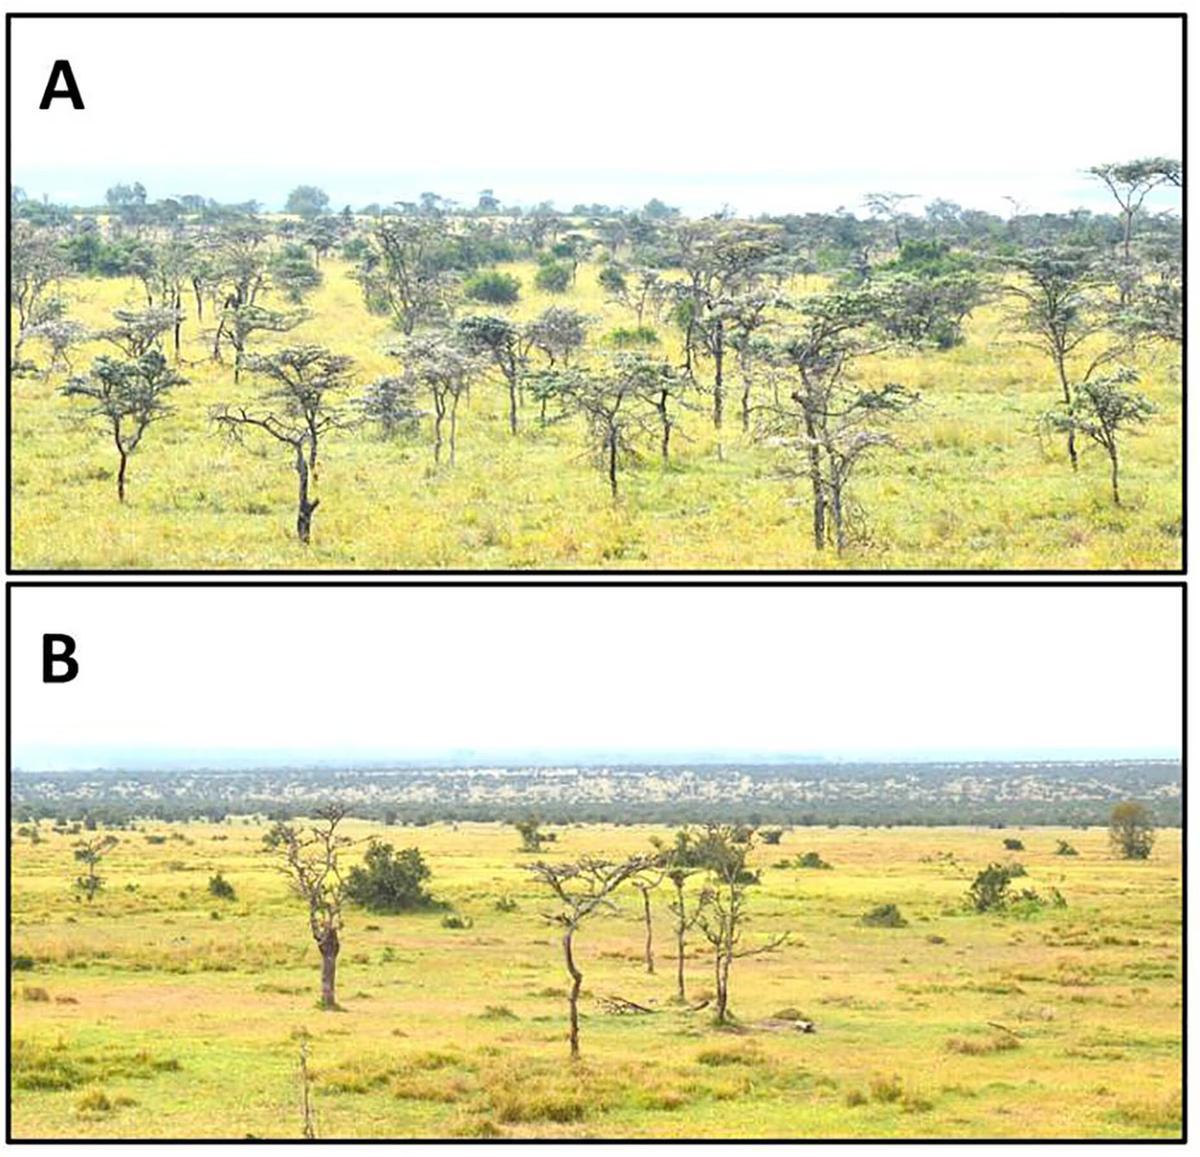 Paisaje del hábitat de los leones, antes y después (abajo) de la llegada de las hormigas invasoras.